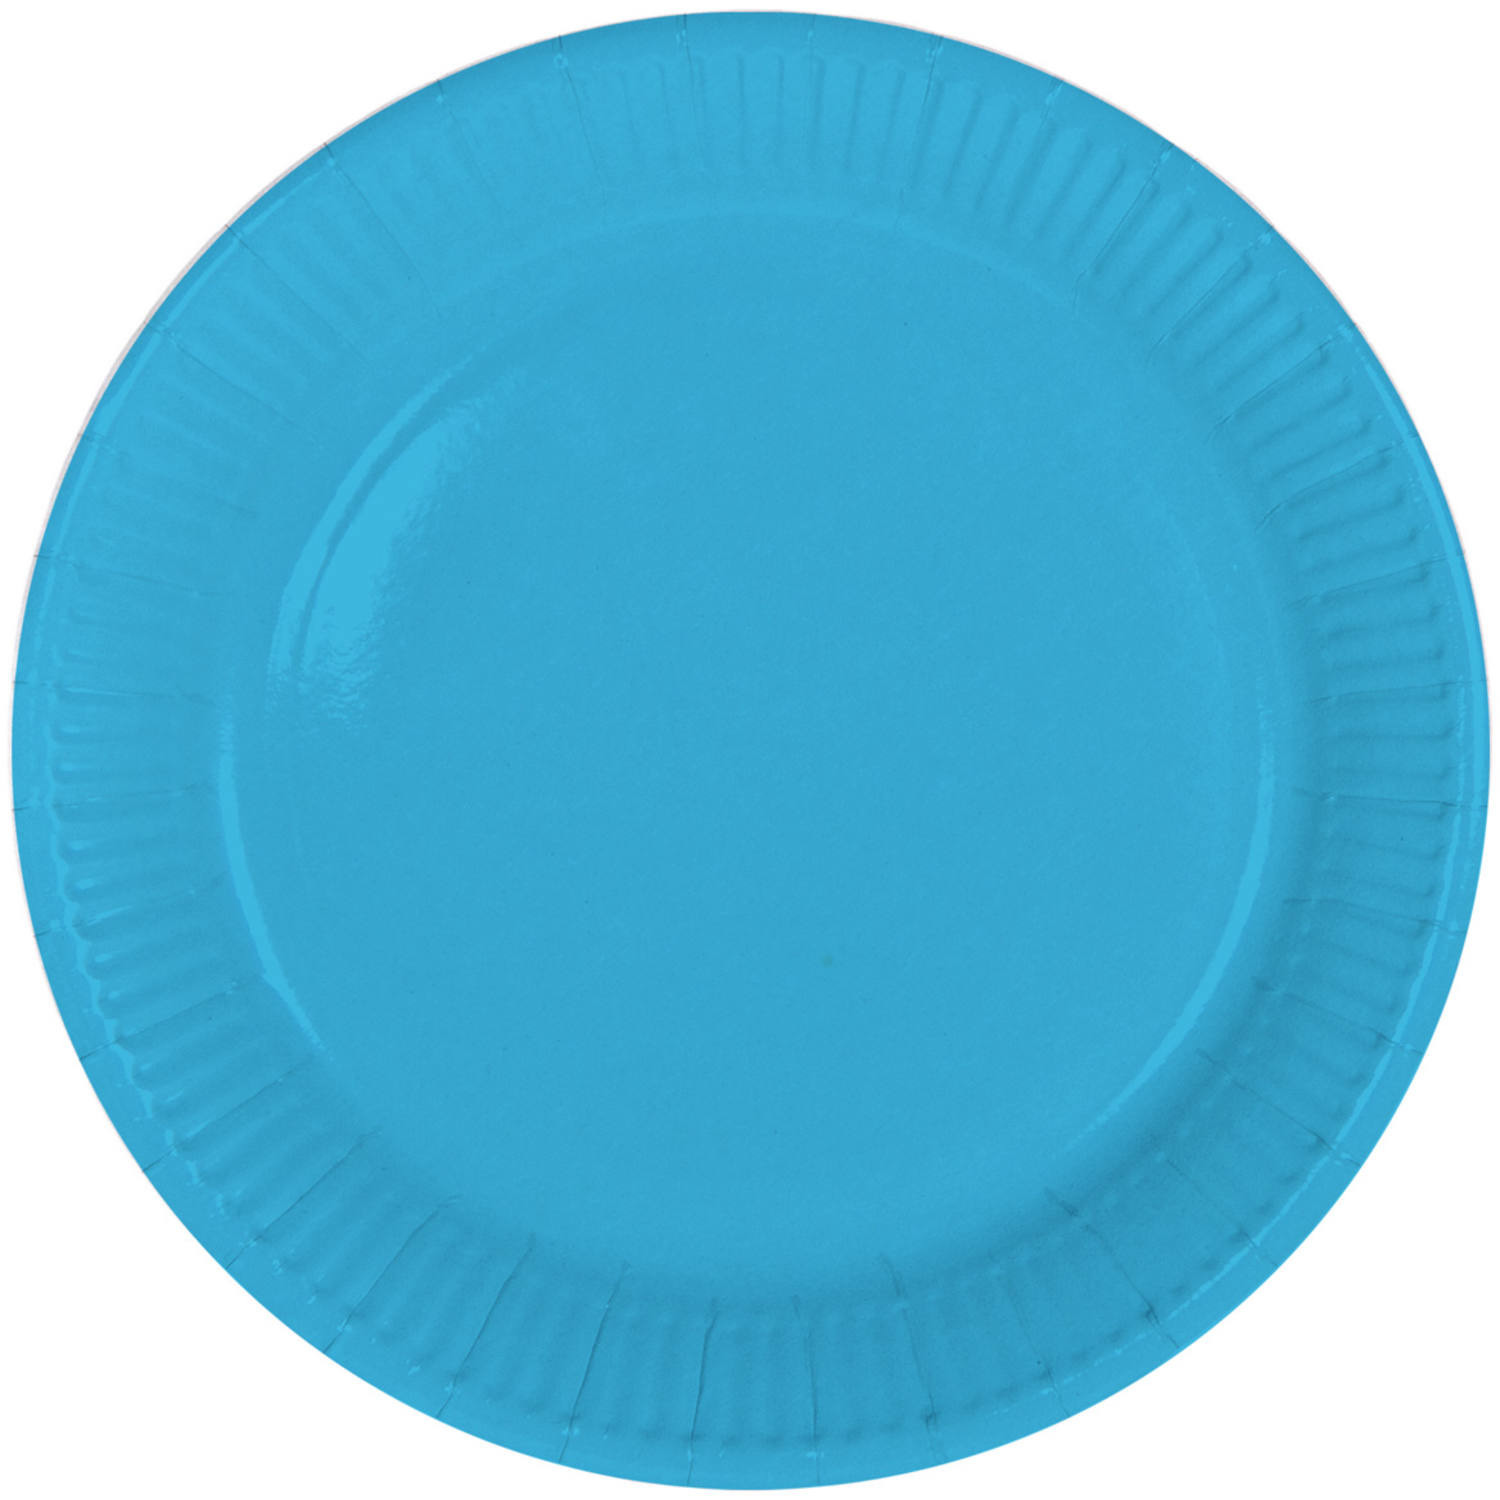 8x stuks party gebak-eet bordjes van papier blauw 23 cm